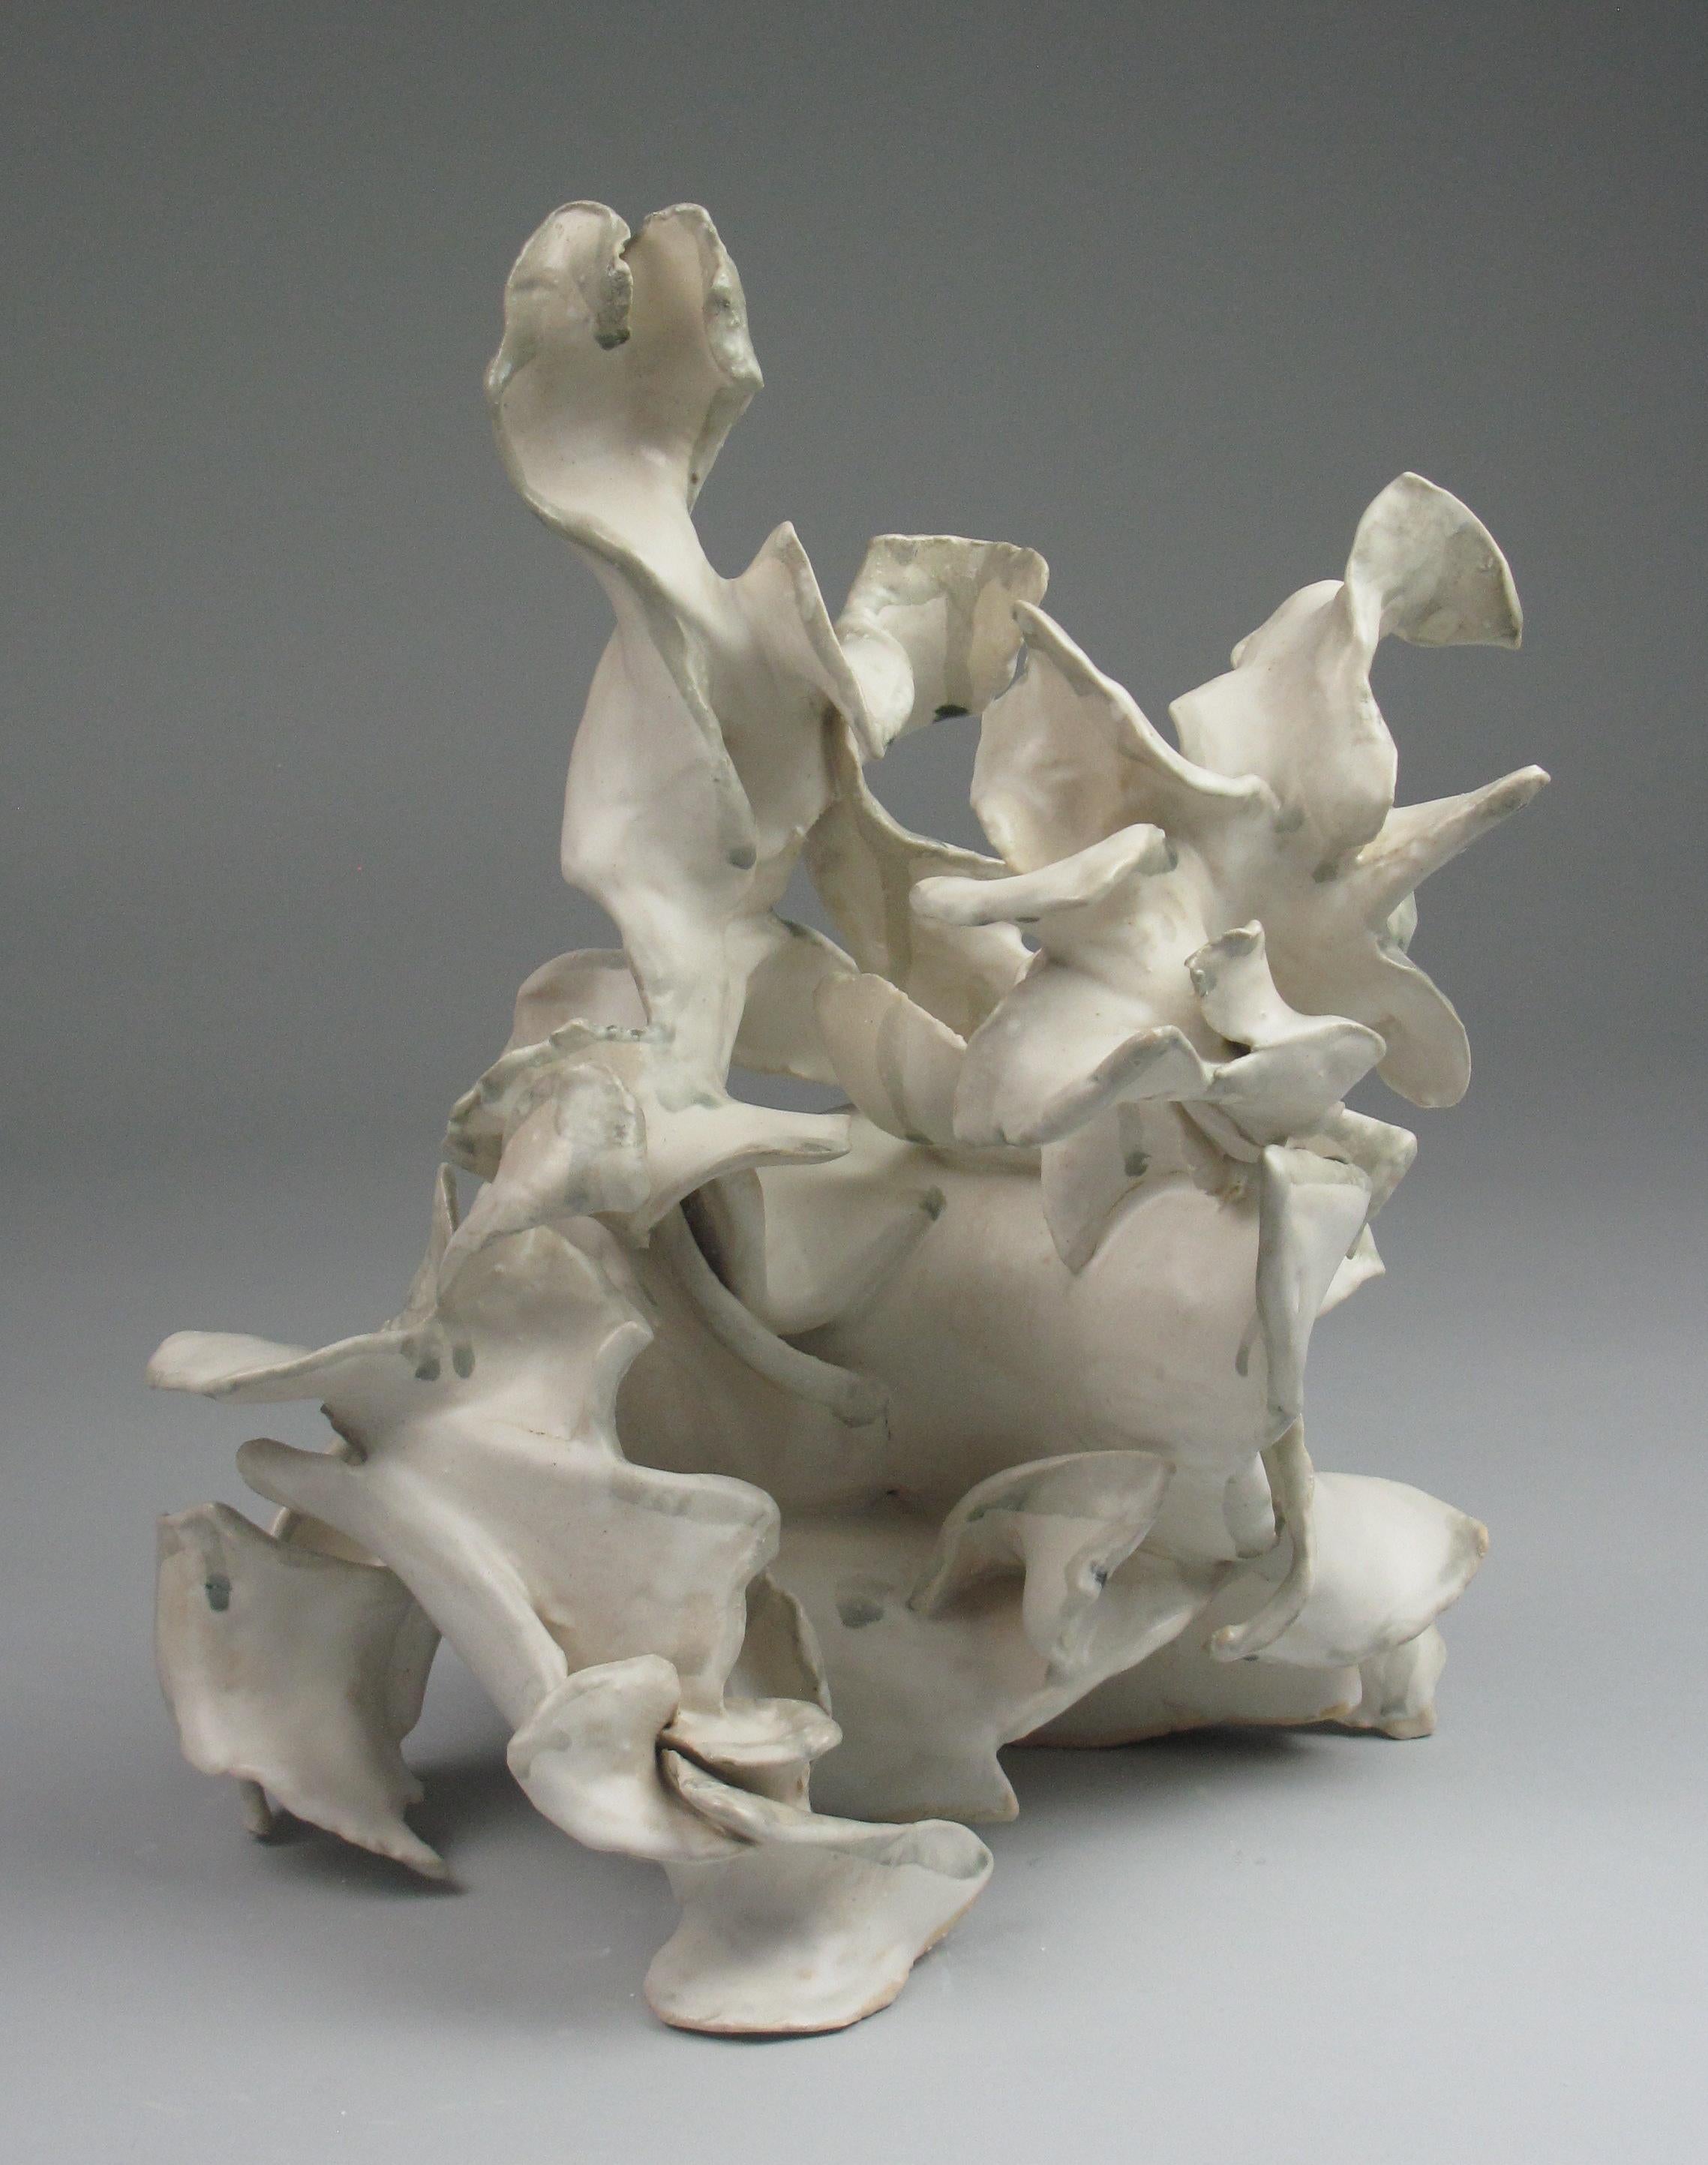 Sara Fine-Wilson Abstract Sculpture - "Heap", gestural, ceramic, sculpture, white, cream, grey, teal, stoneware